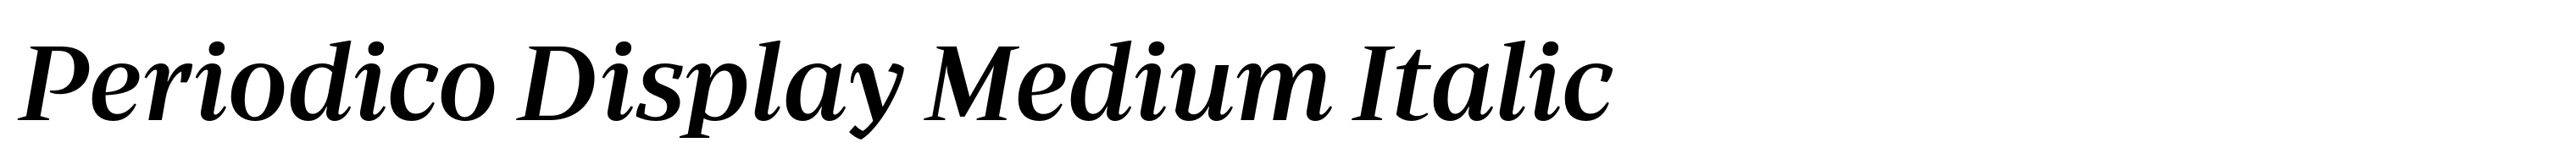 Periodico Display Medium Italic